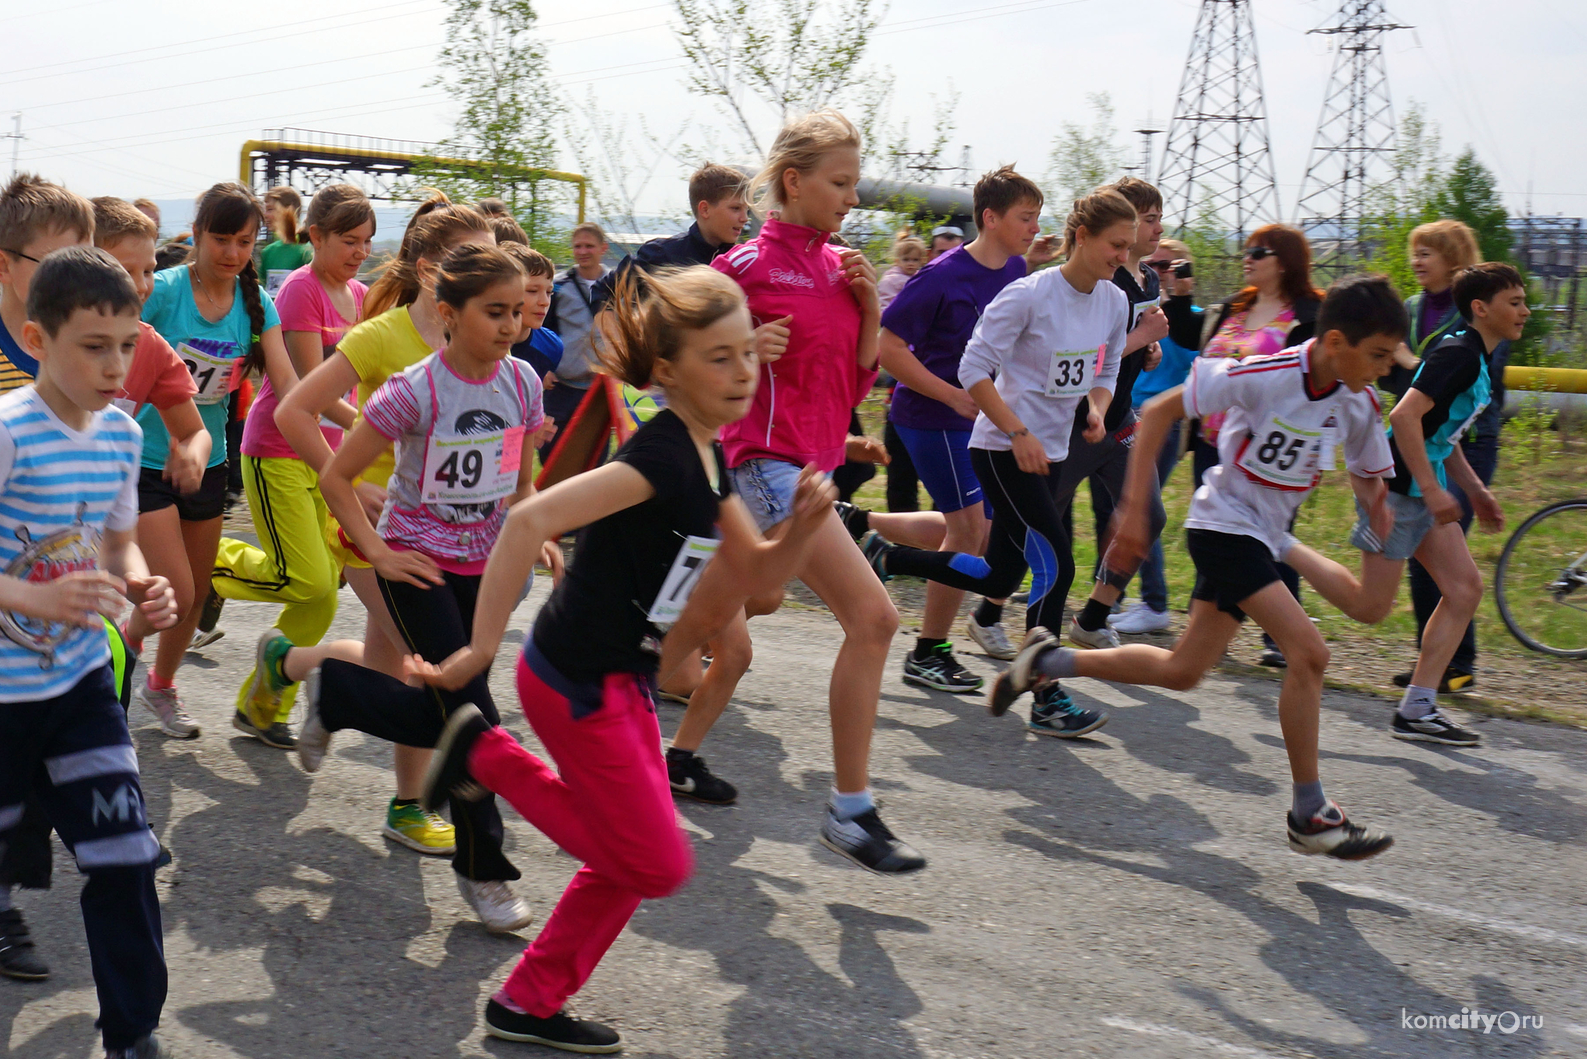 В Комсомольске-на-Амуре разыграли 10-й этап Кубка бегунов